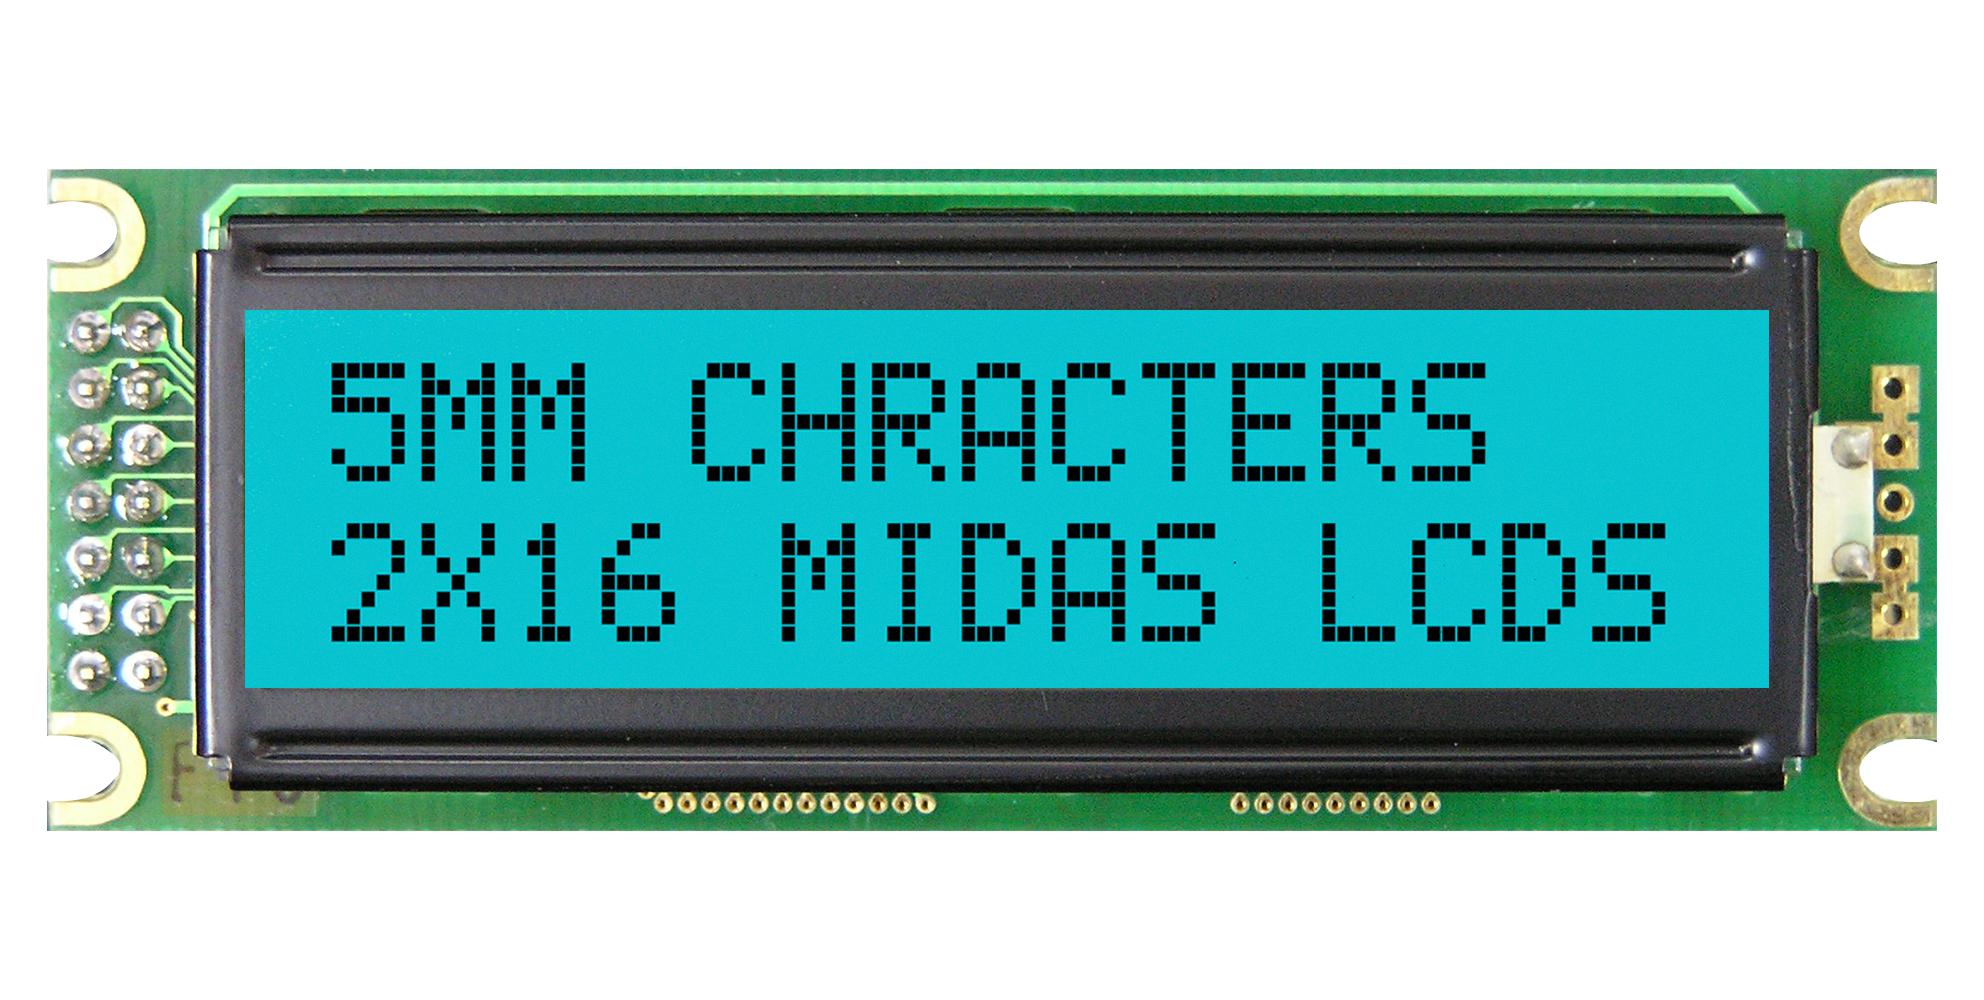 MIDAS LCD Alphanumeric MD21605D6W-FPTLRGB LCD DISPLAY, COB, 16 X 2, FSTN, 5V MIDAS 3773191 MD21605D6W-FPTLRGB